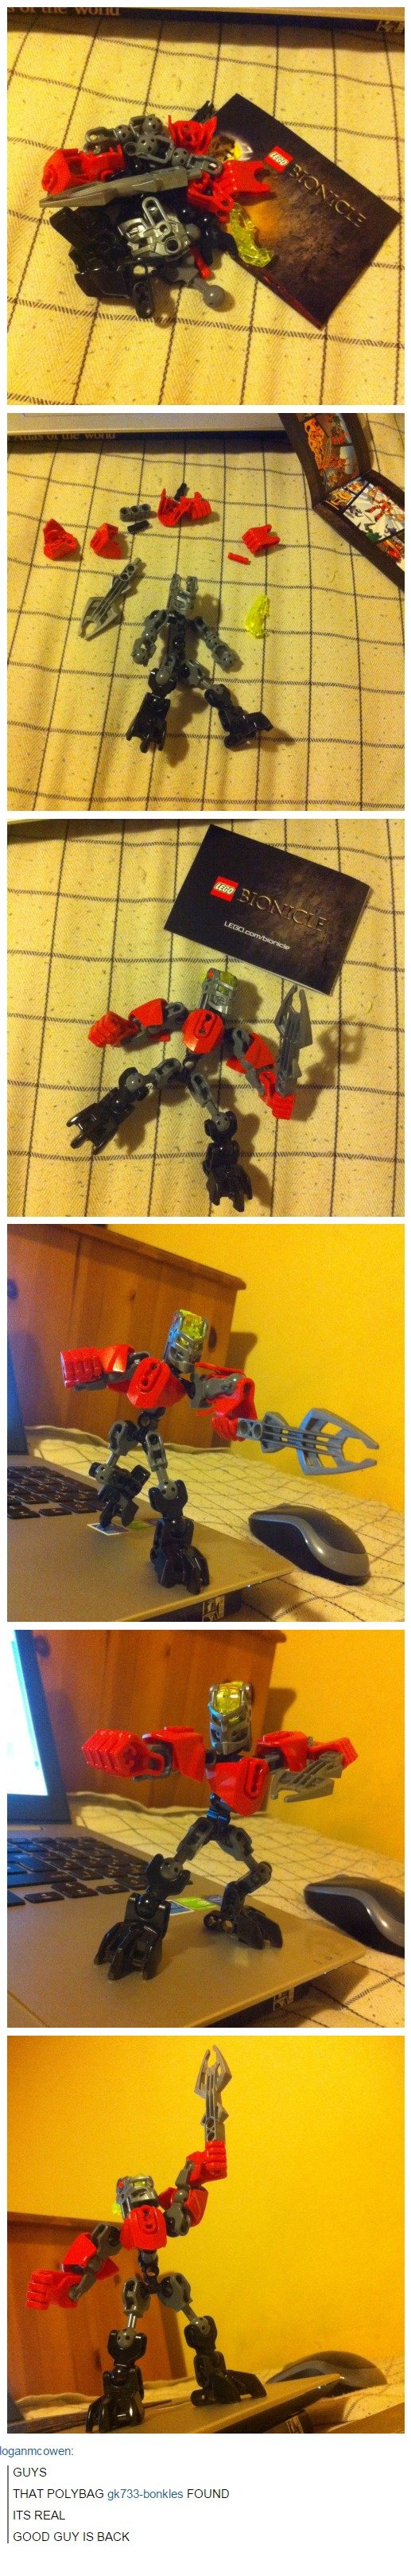 Bionicle_a1839c_5573400.jpg